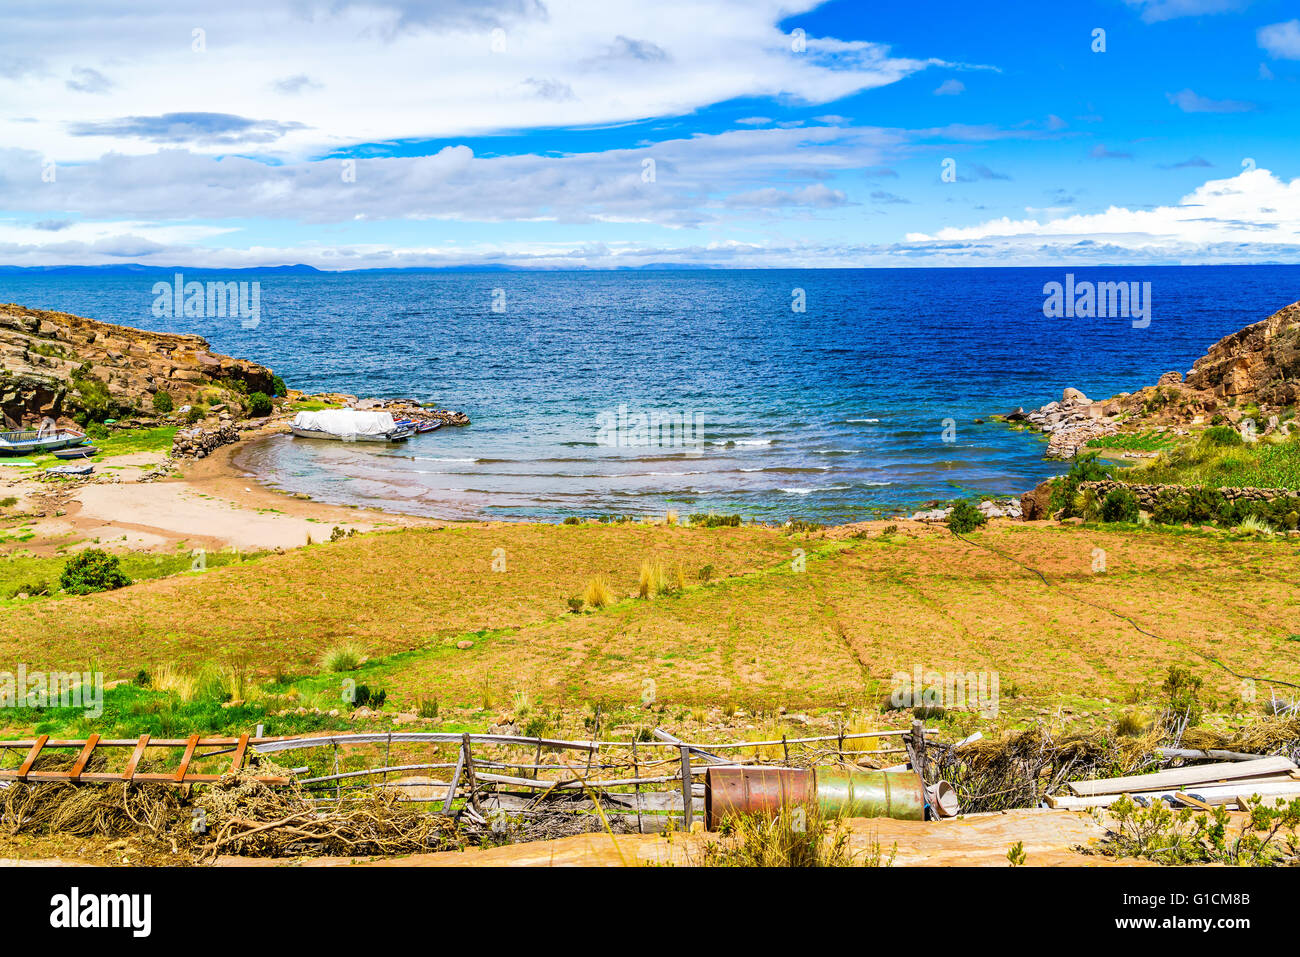 Ansicht der Titicaca-See, der größte See der Höhenlage in der Welt, die dieses Bild im peruanischen Seite aufgenommen wurde Stockfoto